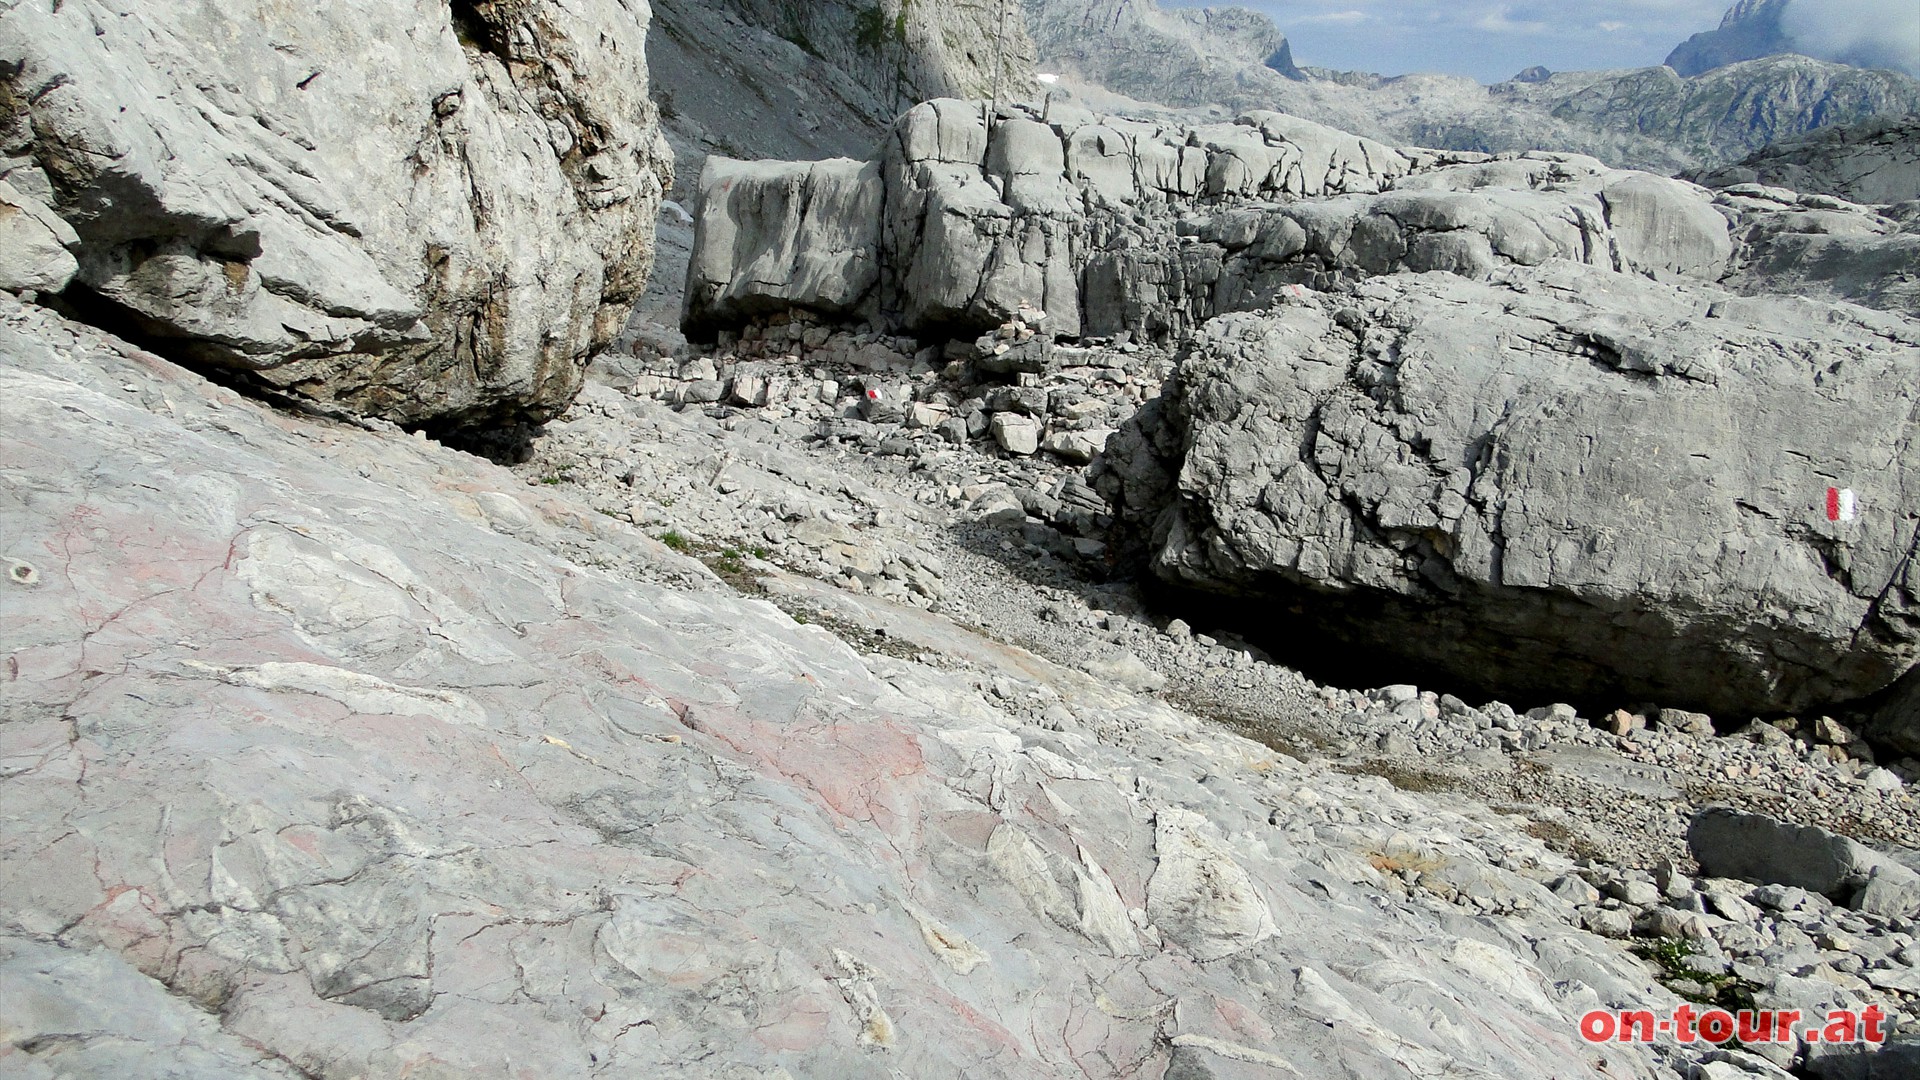 Riesige Steinflchen sind mit unterschiedlichsten versteinerten Meeresbewohnern bevlkert.